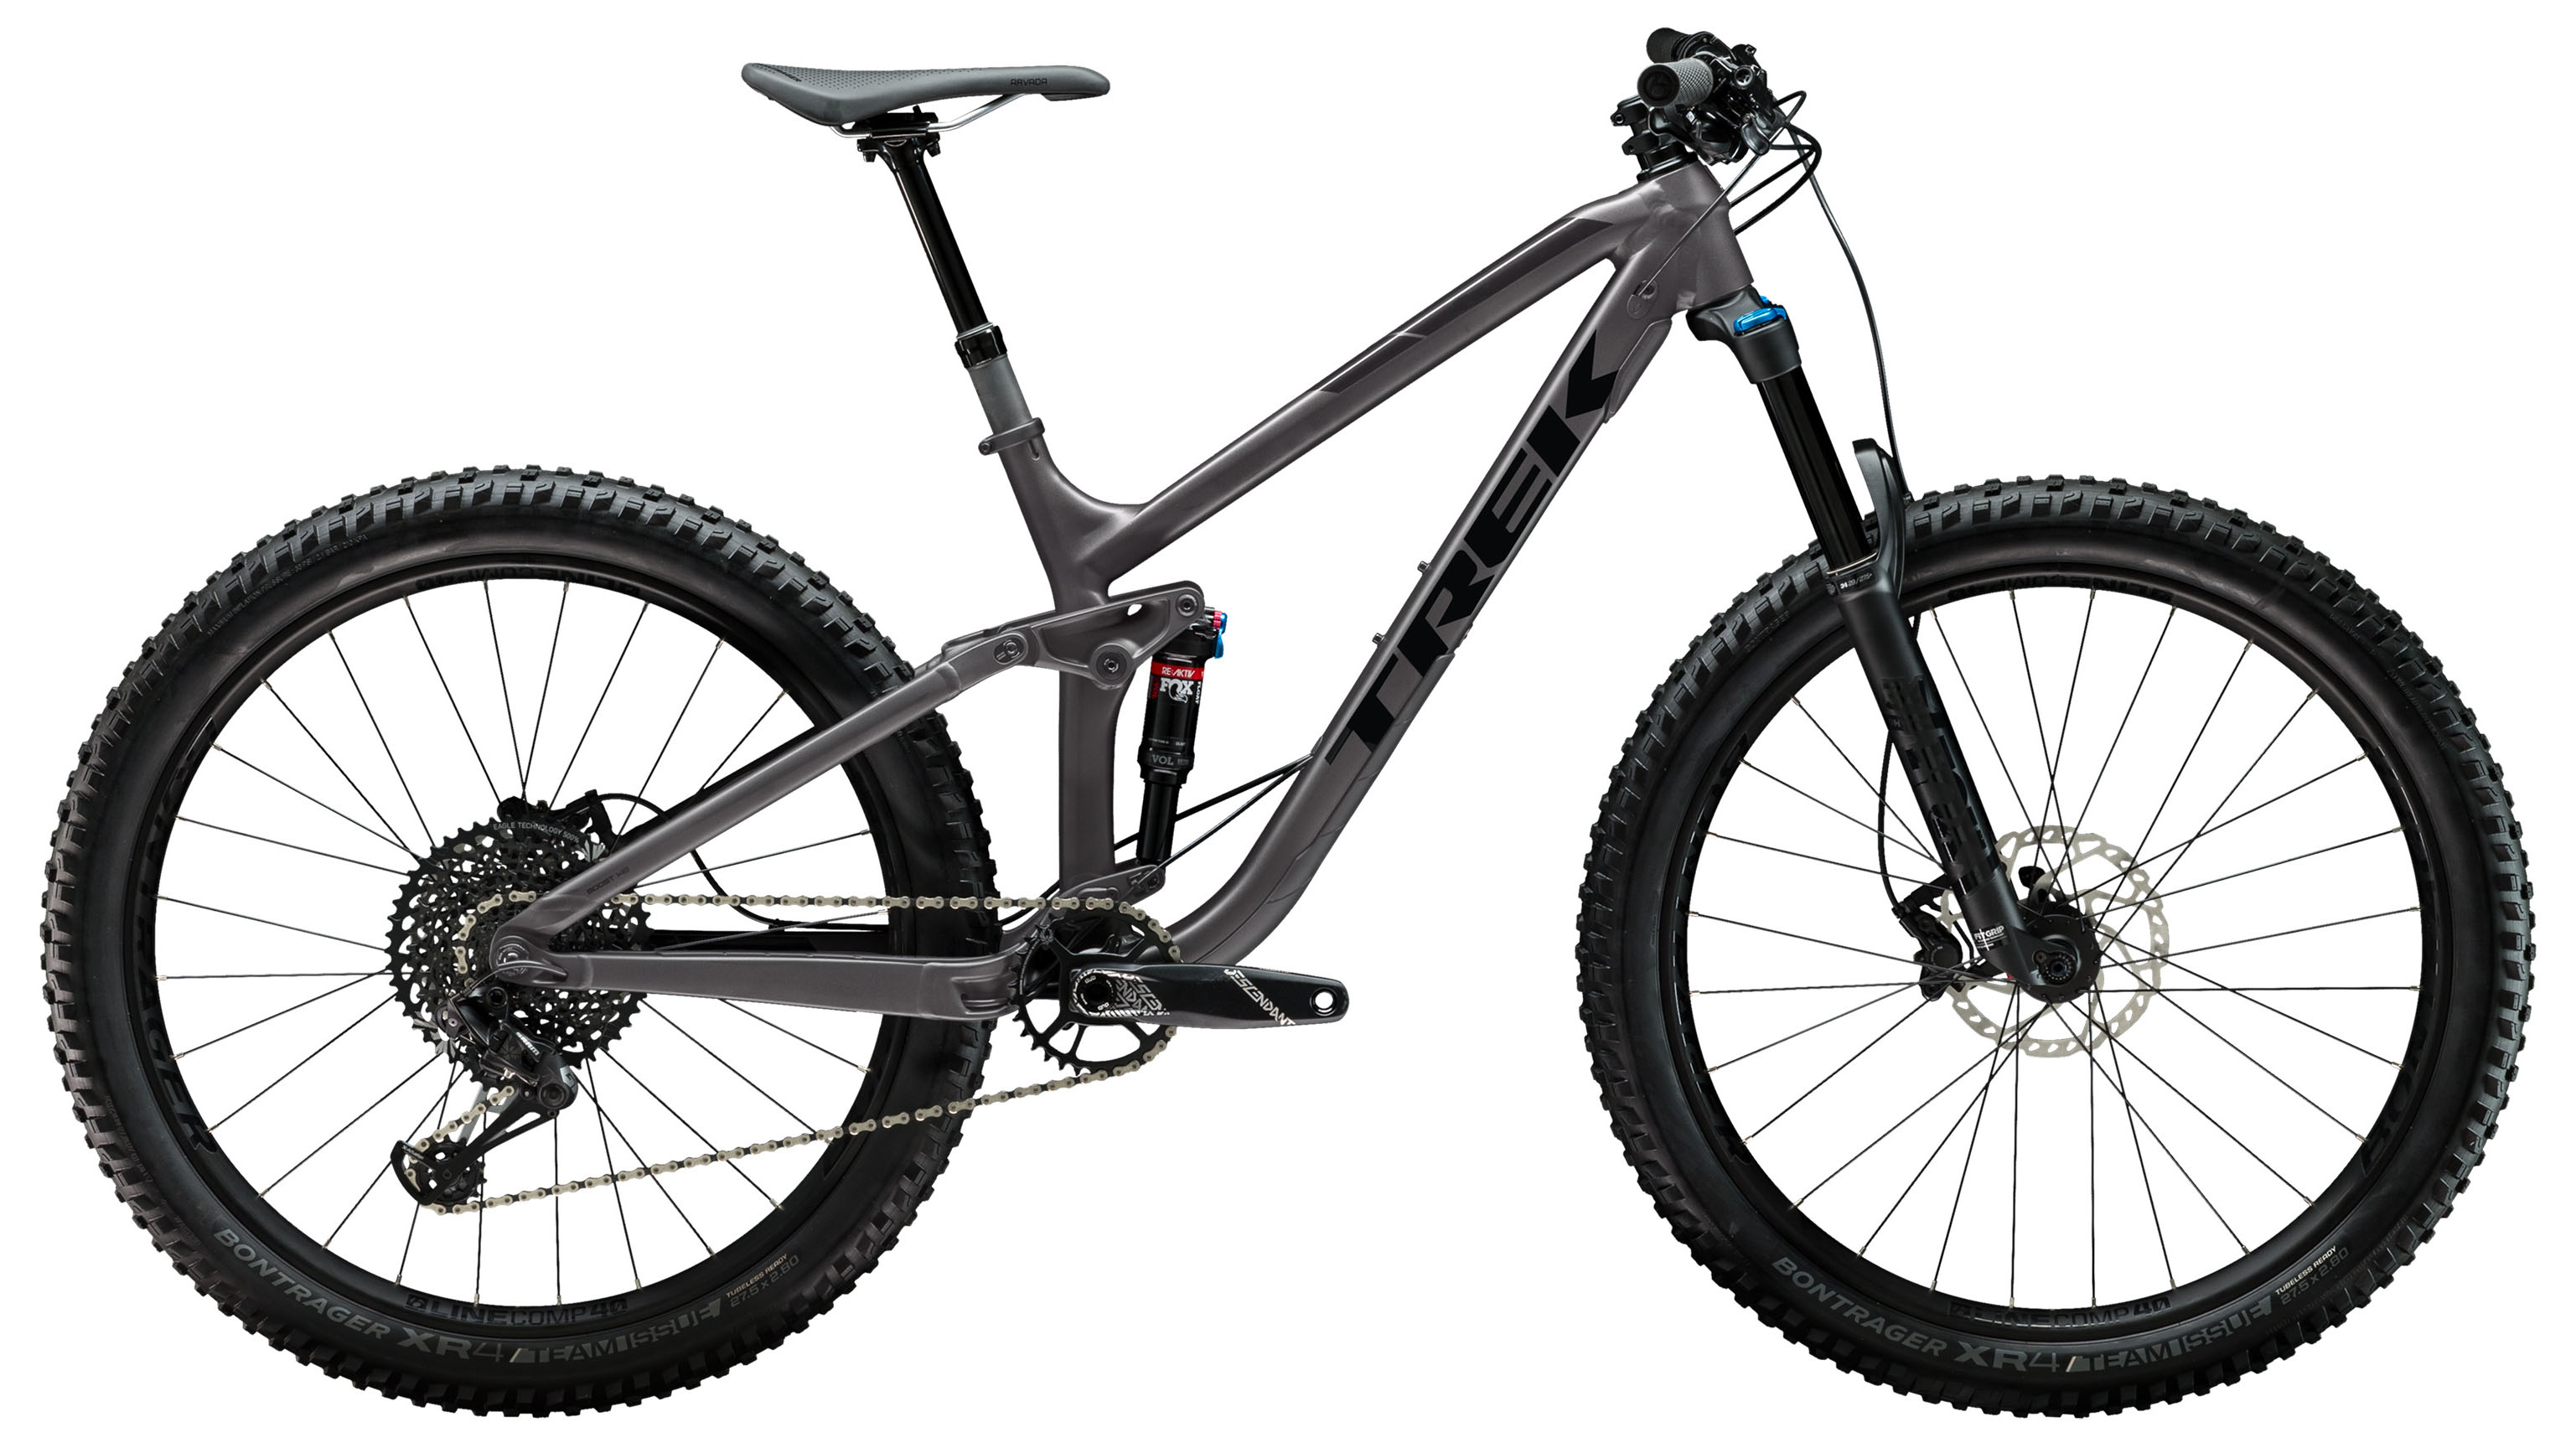  Отзывы о Двухподвесном велосипеде Trek Fuel EX 8 Plus 27,5 2019